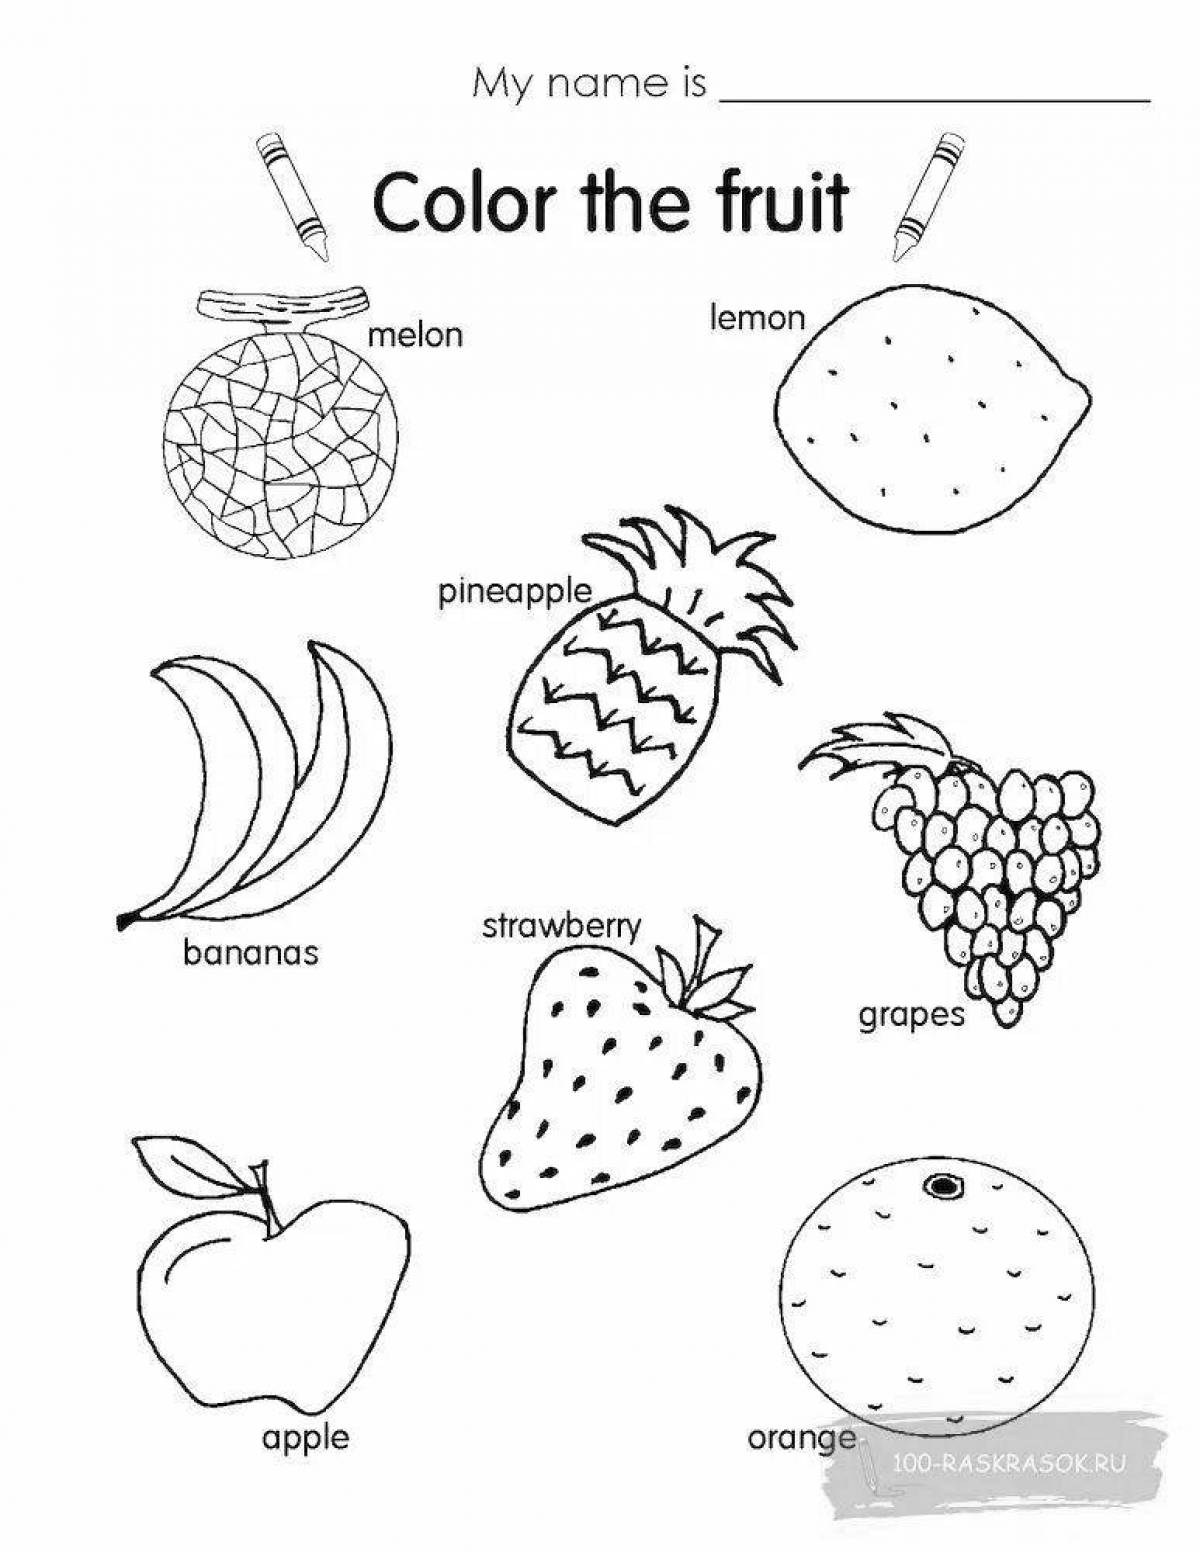 Fruits and Vegetables задания для детей